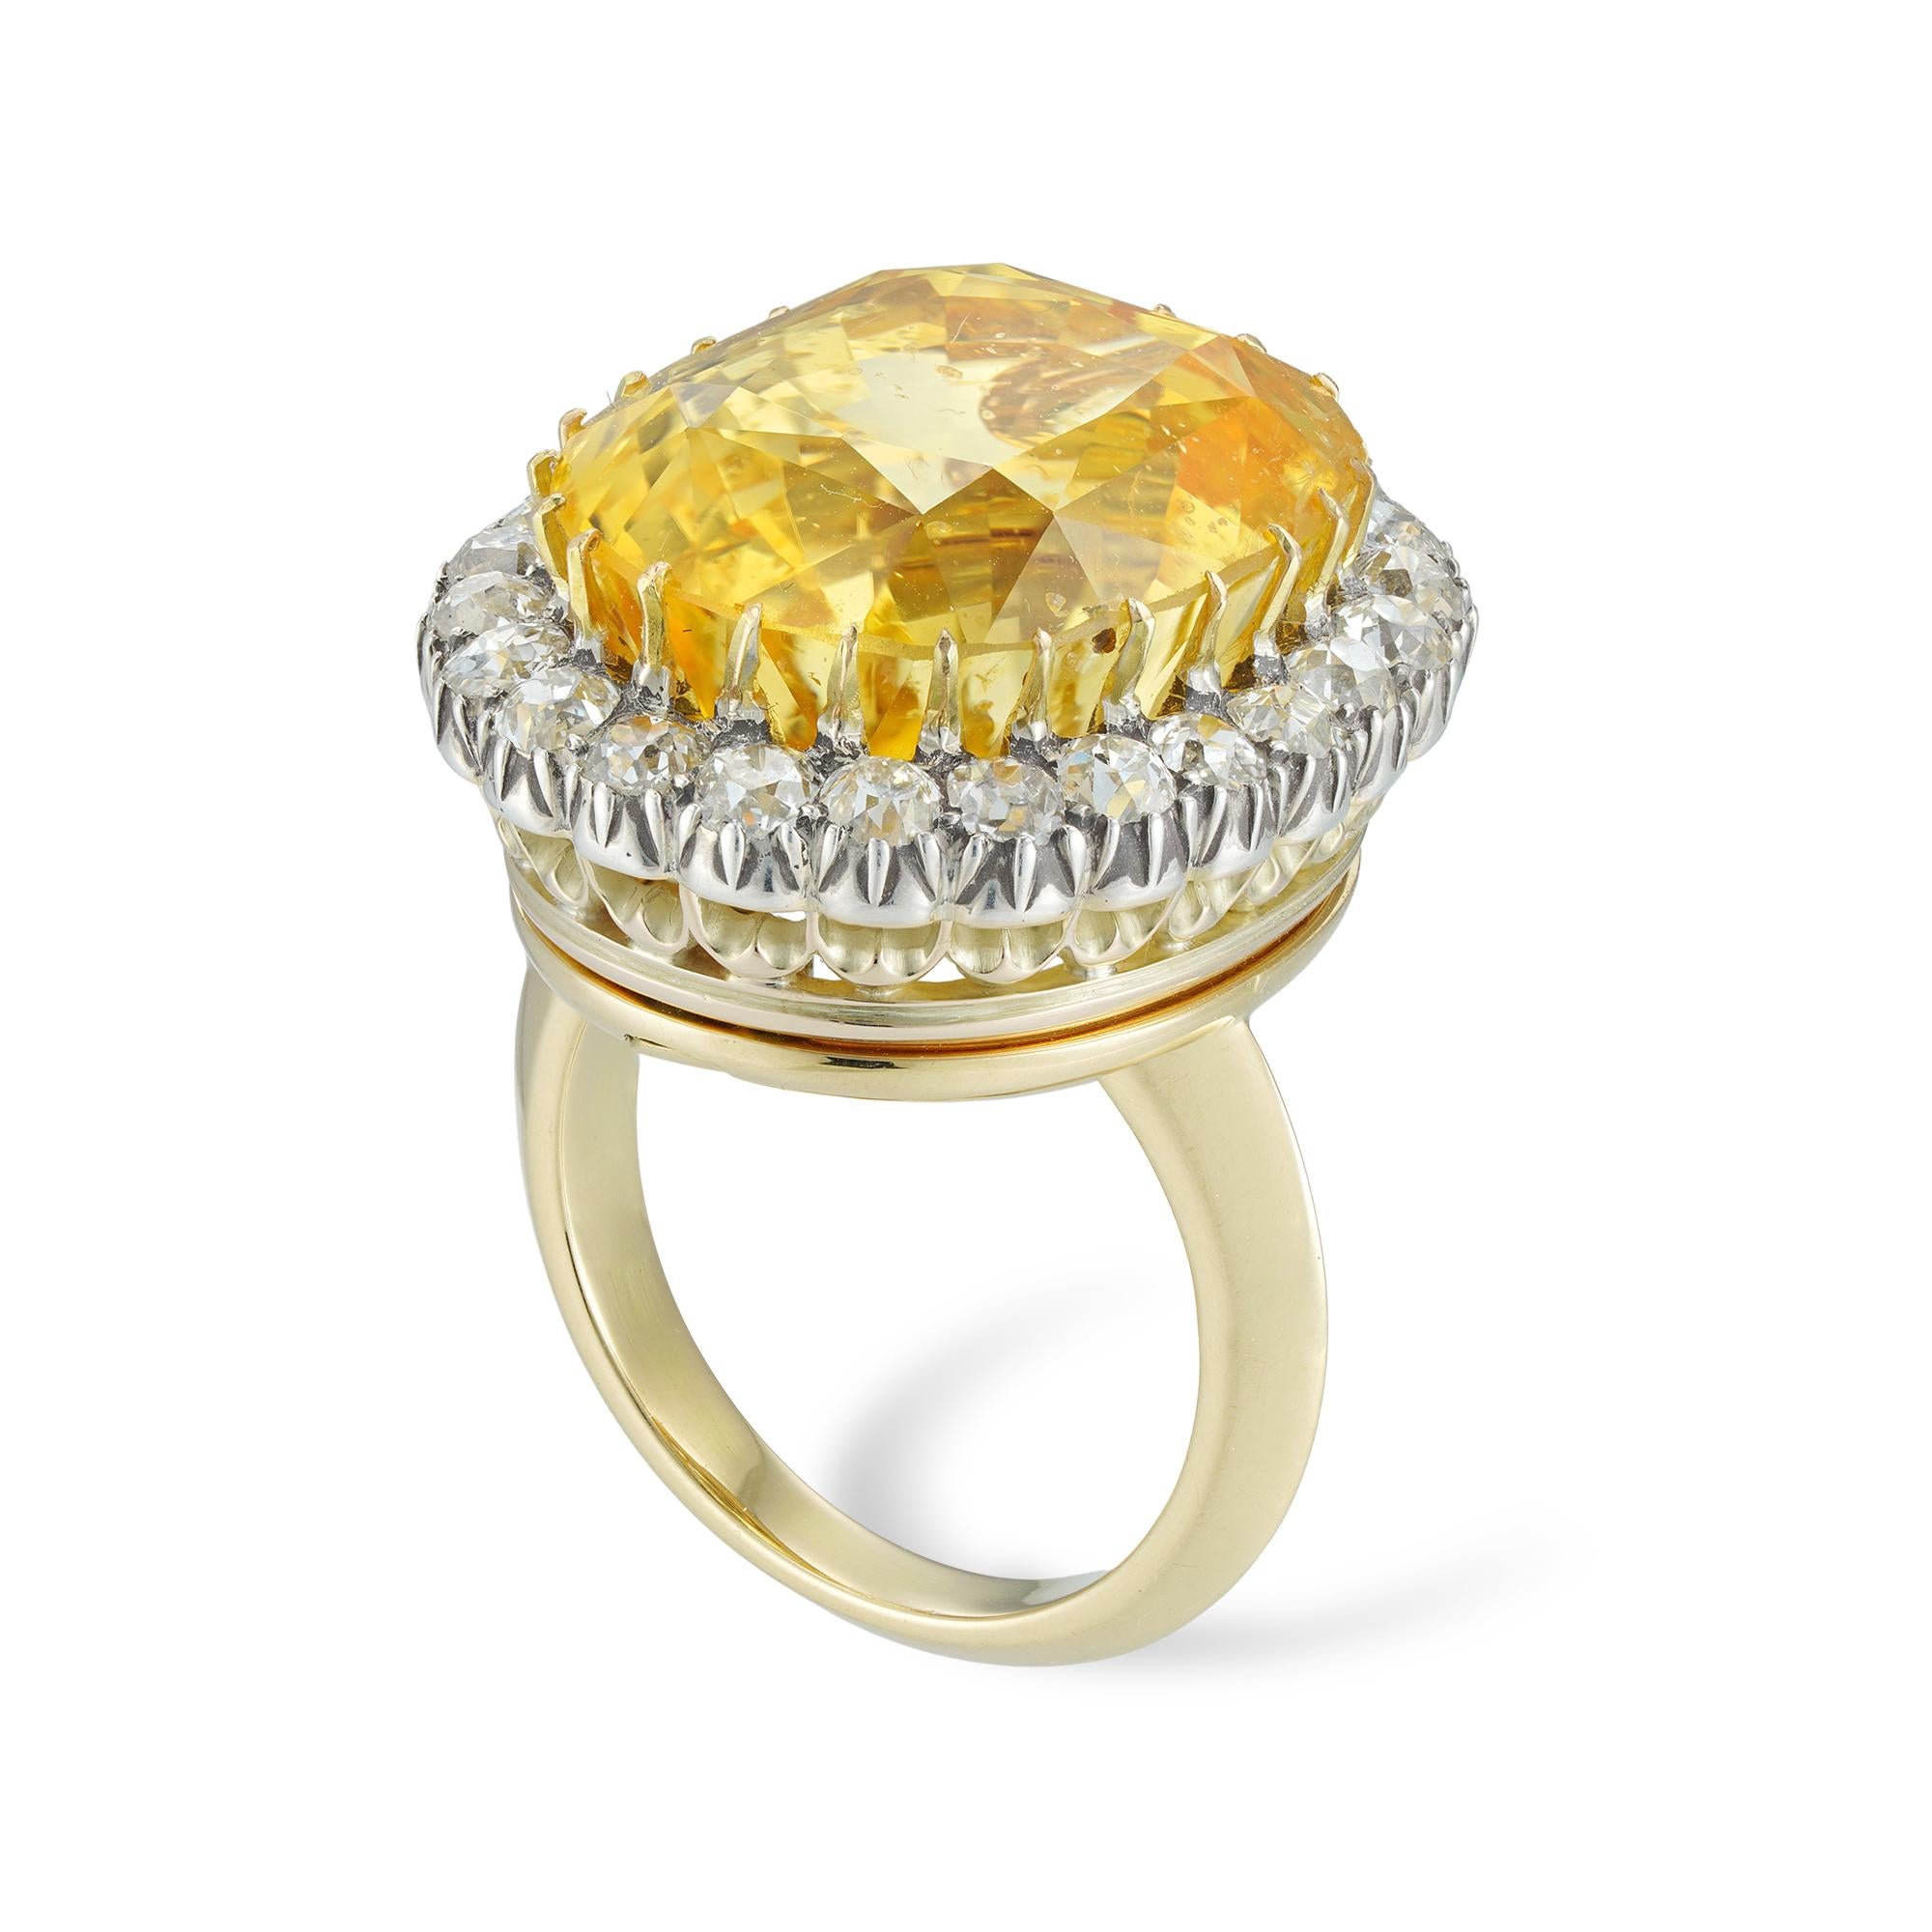 Eine wichtige viktorianische Brosche/Ring mit gelbem Saphir und Diamanten, der natürliche Saphir mit einem Gewicht von 31,58 Karat, begleitet von einem GCS-Bericht, der besagt, dass er aus Sri Lanka stammt, ohne Anzeichen von Erhitzung, in Gelbgold